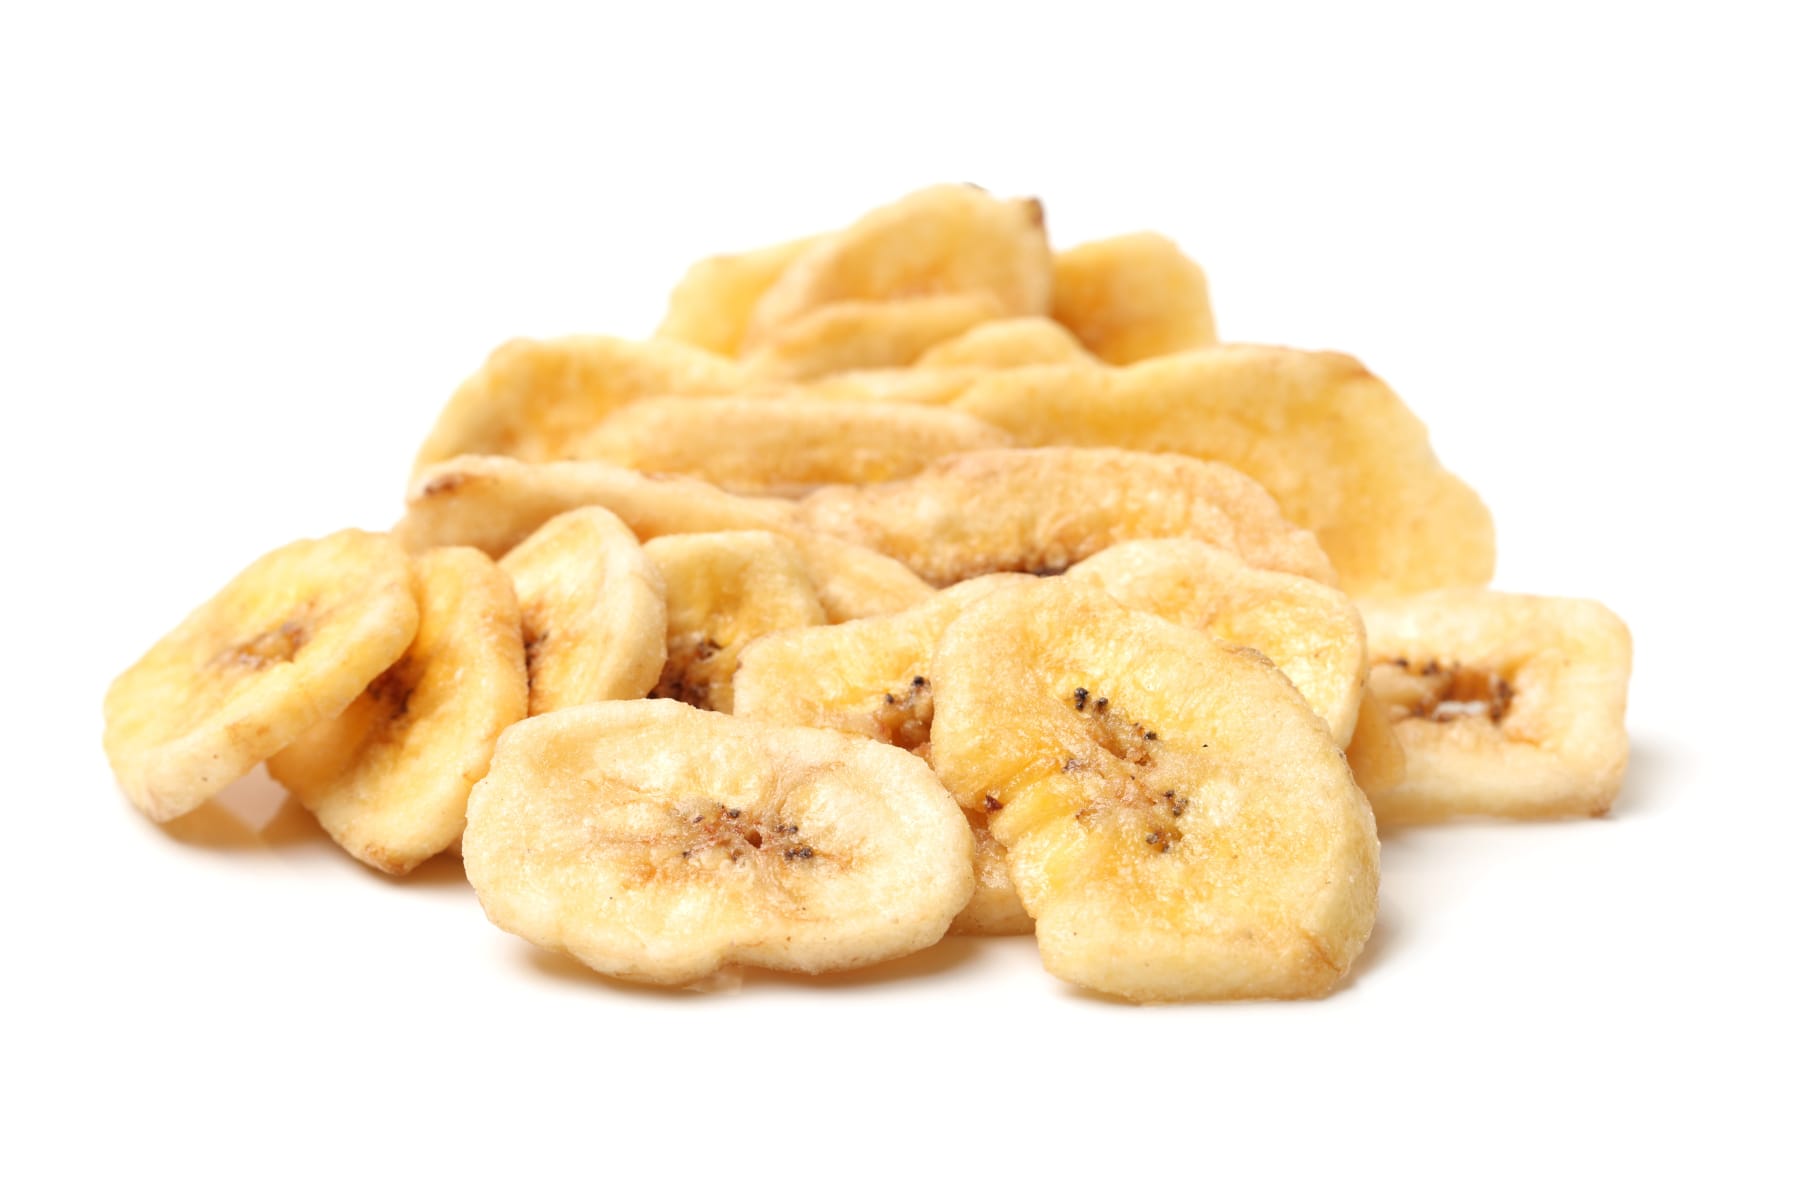 Fruci100% Surtidas Pack x 8 unidades 30g (Fruta deshidratada: Banano, –  INNOVA FOODS CO